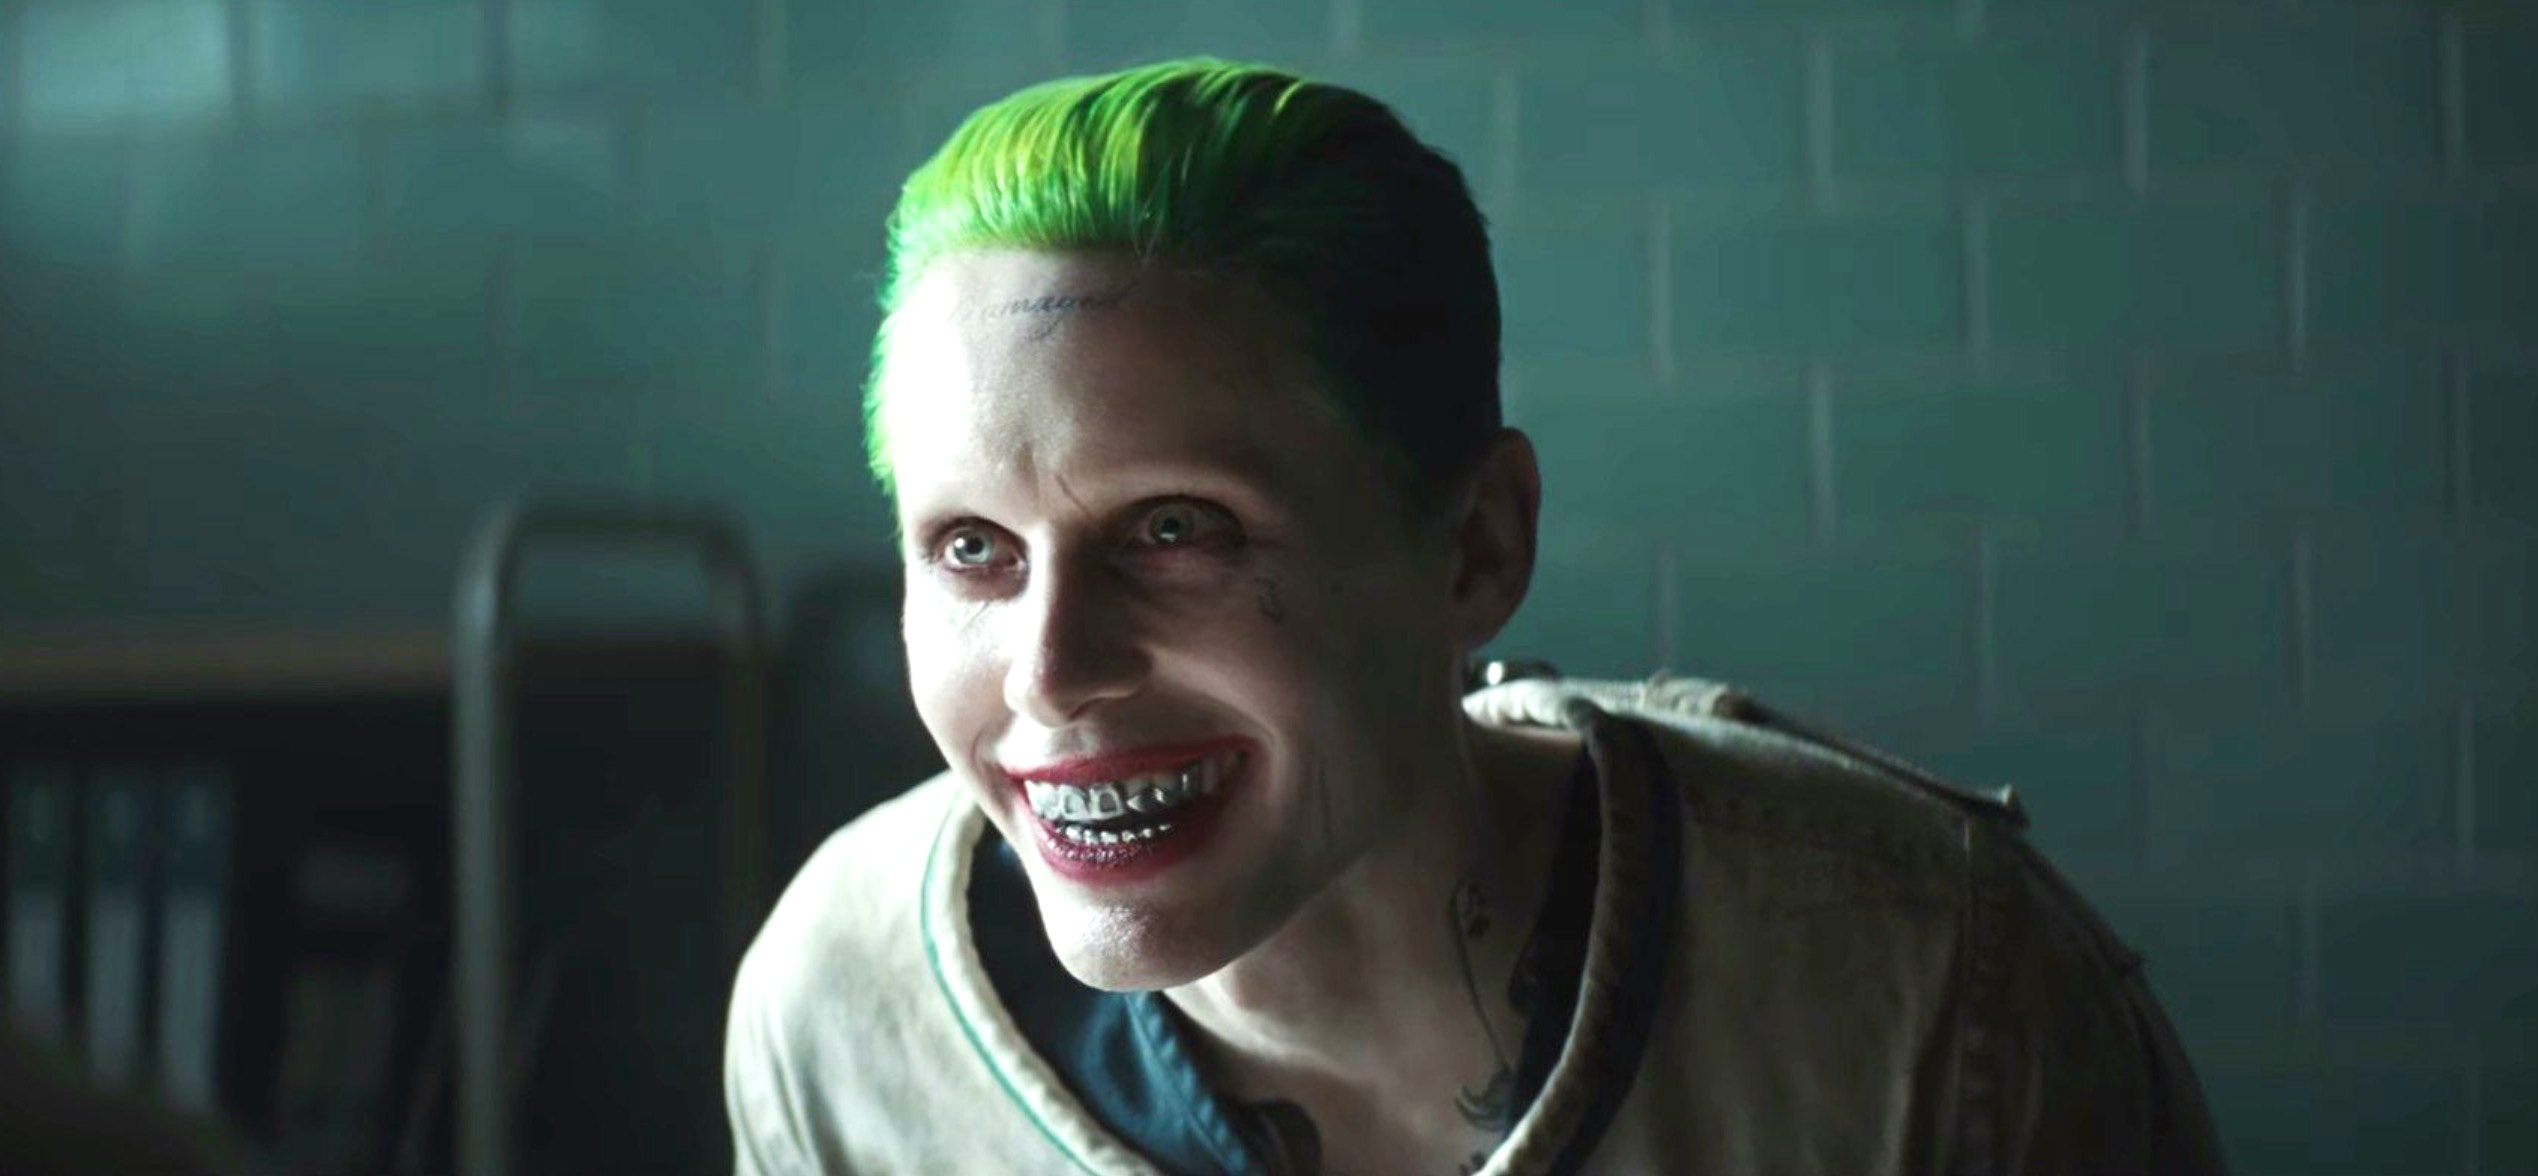 Jared Letos Justice League Joker Looks Like Heath Ledgers Joker 